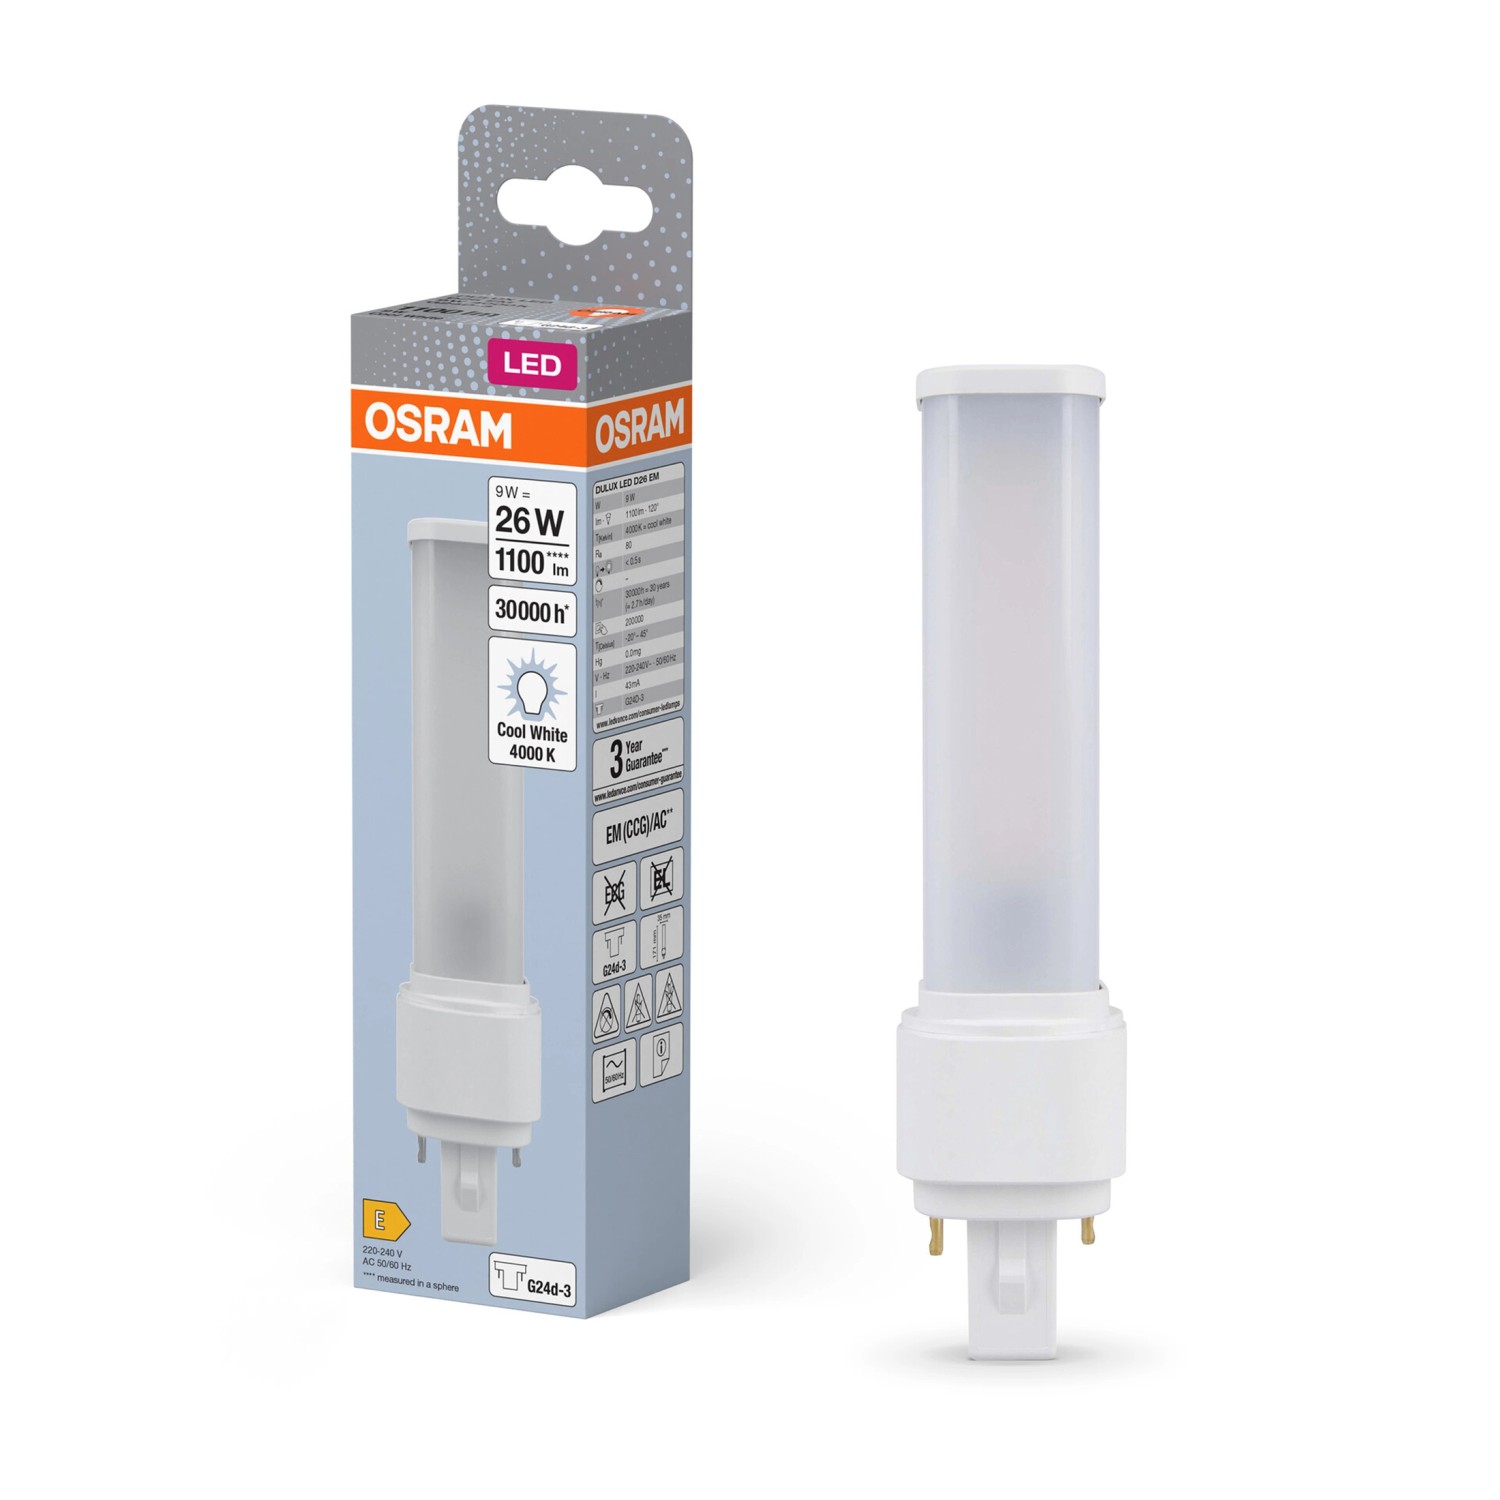 Osram LED-Leuchtmittel G24d-3 Röhrenform 9 W 1100 lm 17,1 x 3,5 cm (H x Ø)